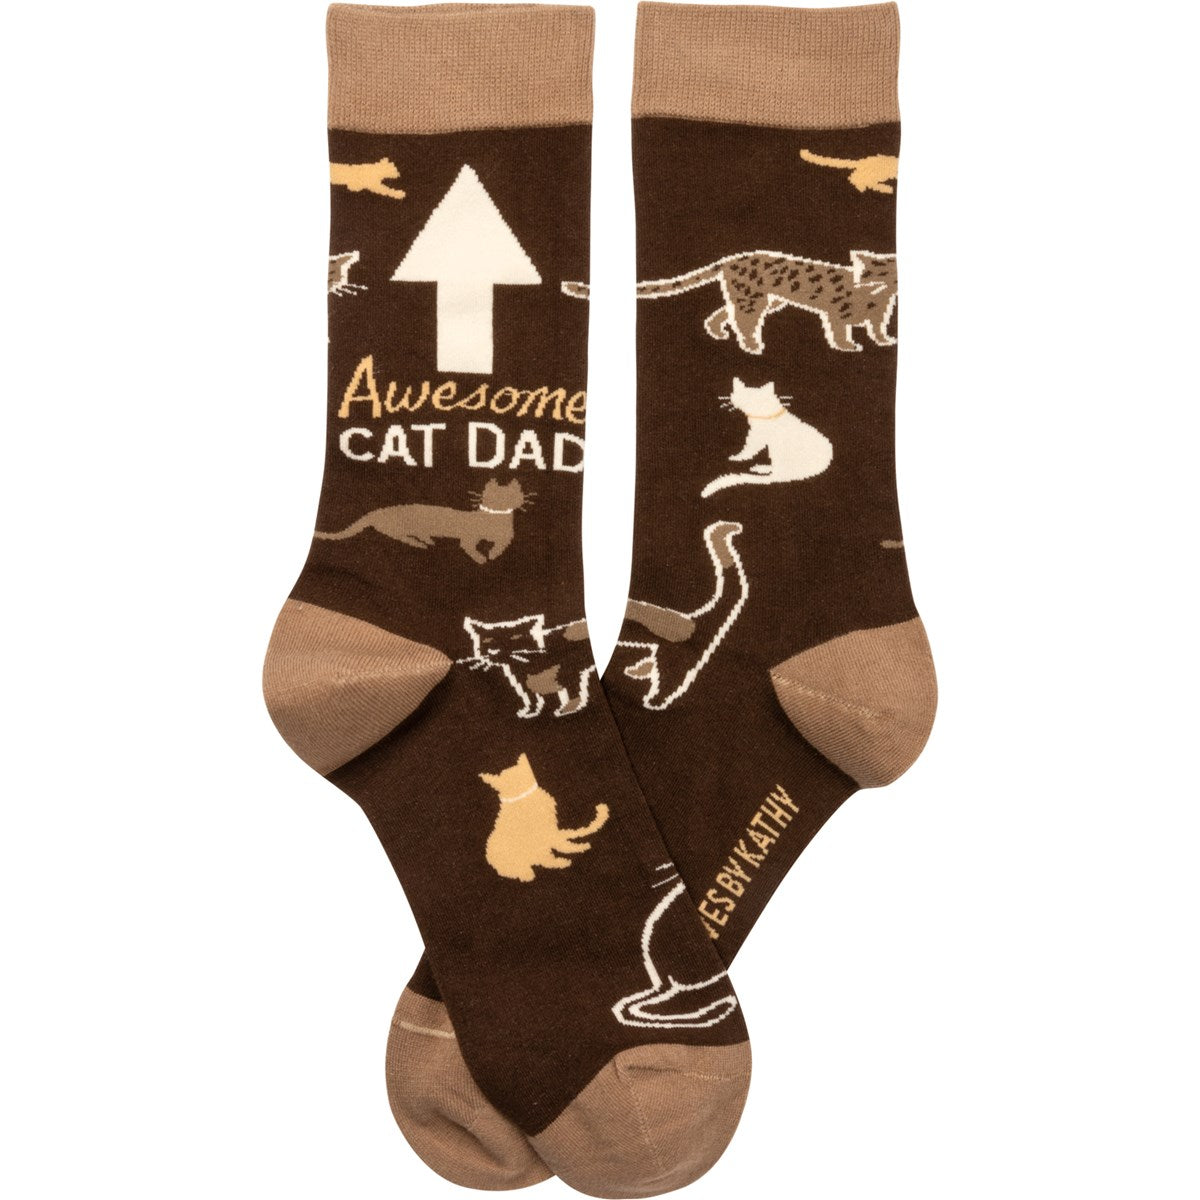 Awesome Cat Dad Fun Socks